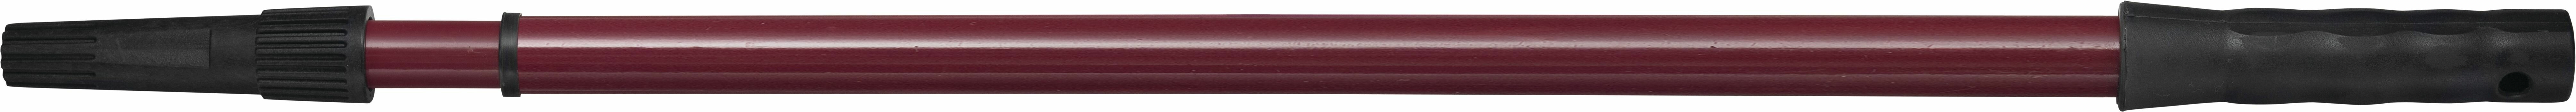 Ручка телескопическая металлическая 1 0-2 м Matrix